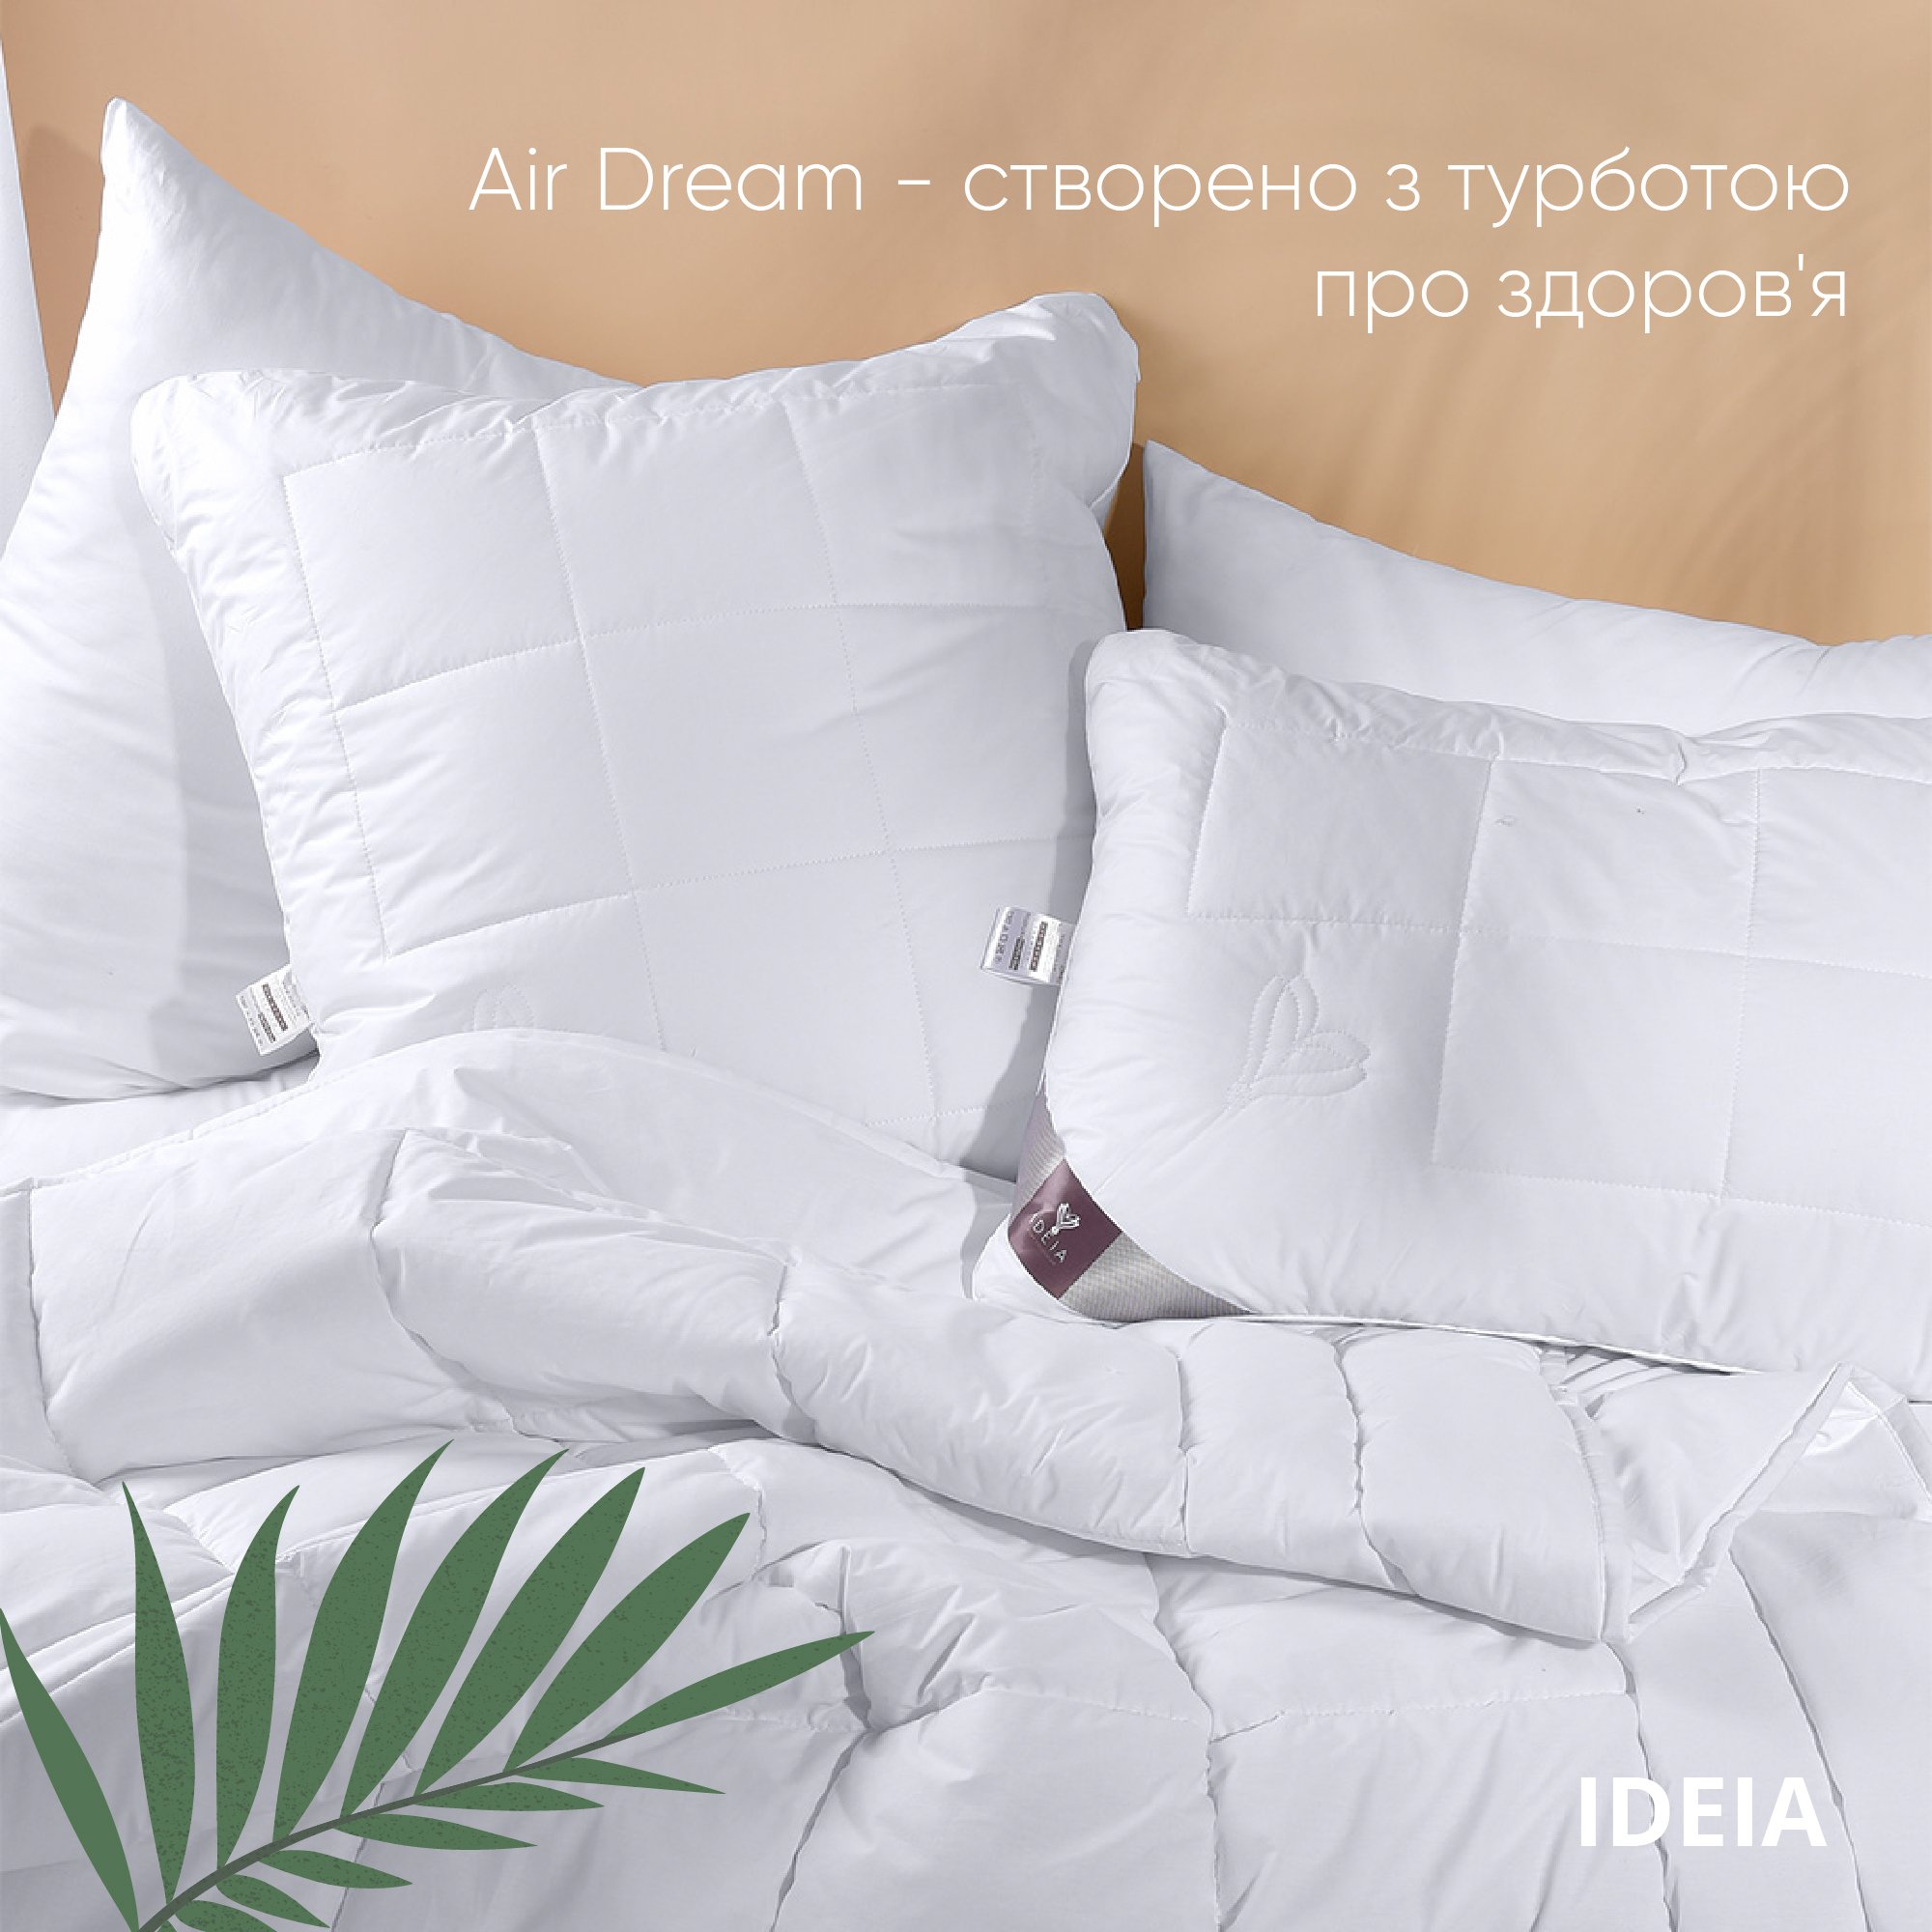 Ковдра Ideia Air Dream Premium літня, 215х155, білий (8-11696) - фото 6